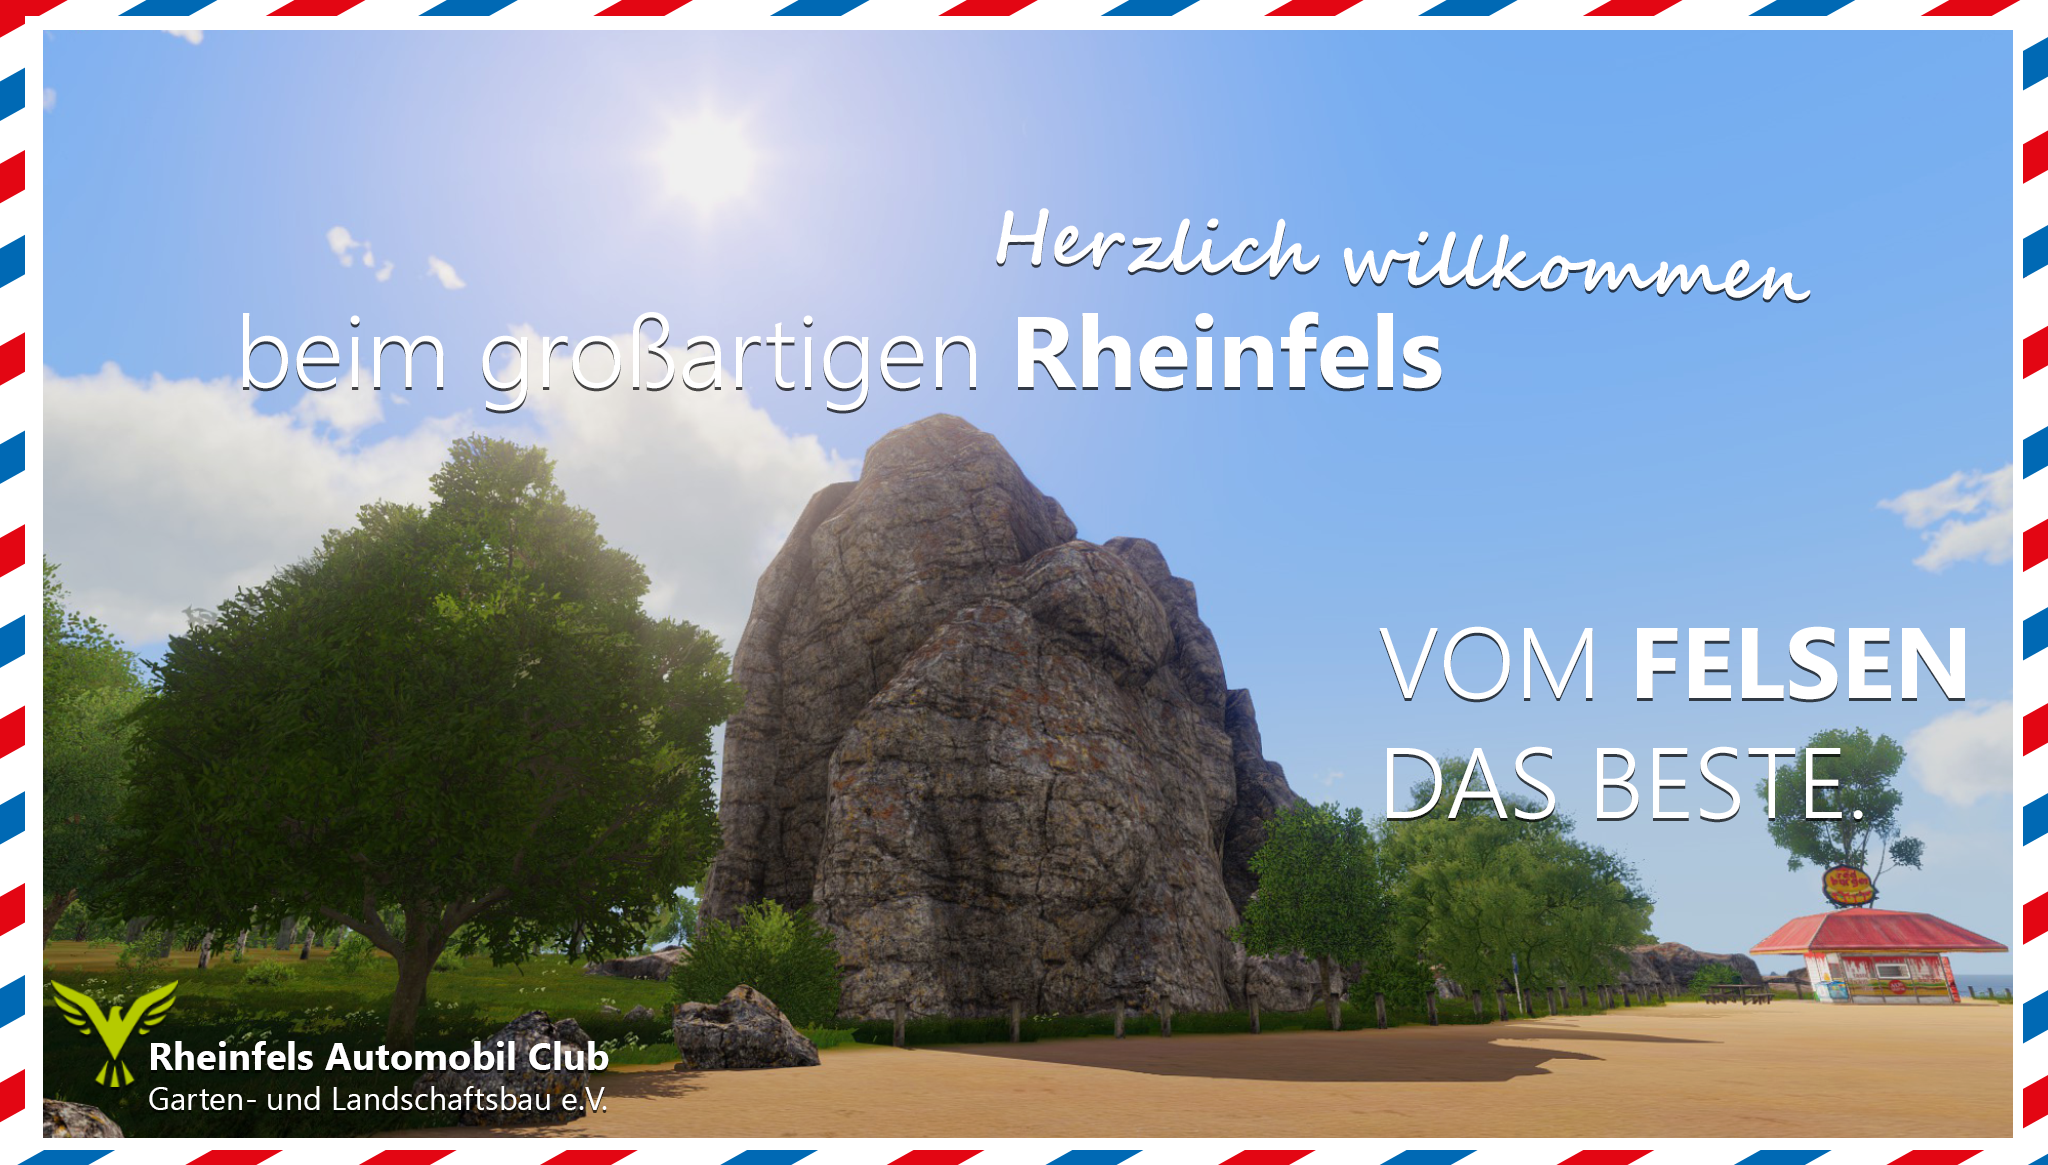 Waren Sie schon mal beim Rheinfels?